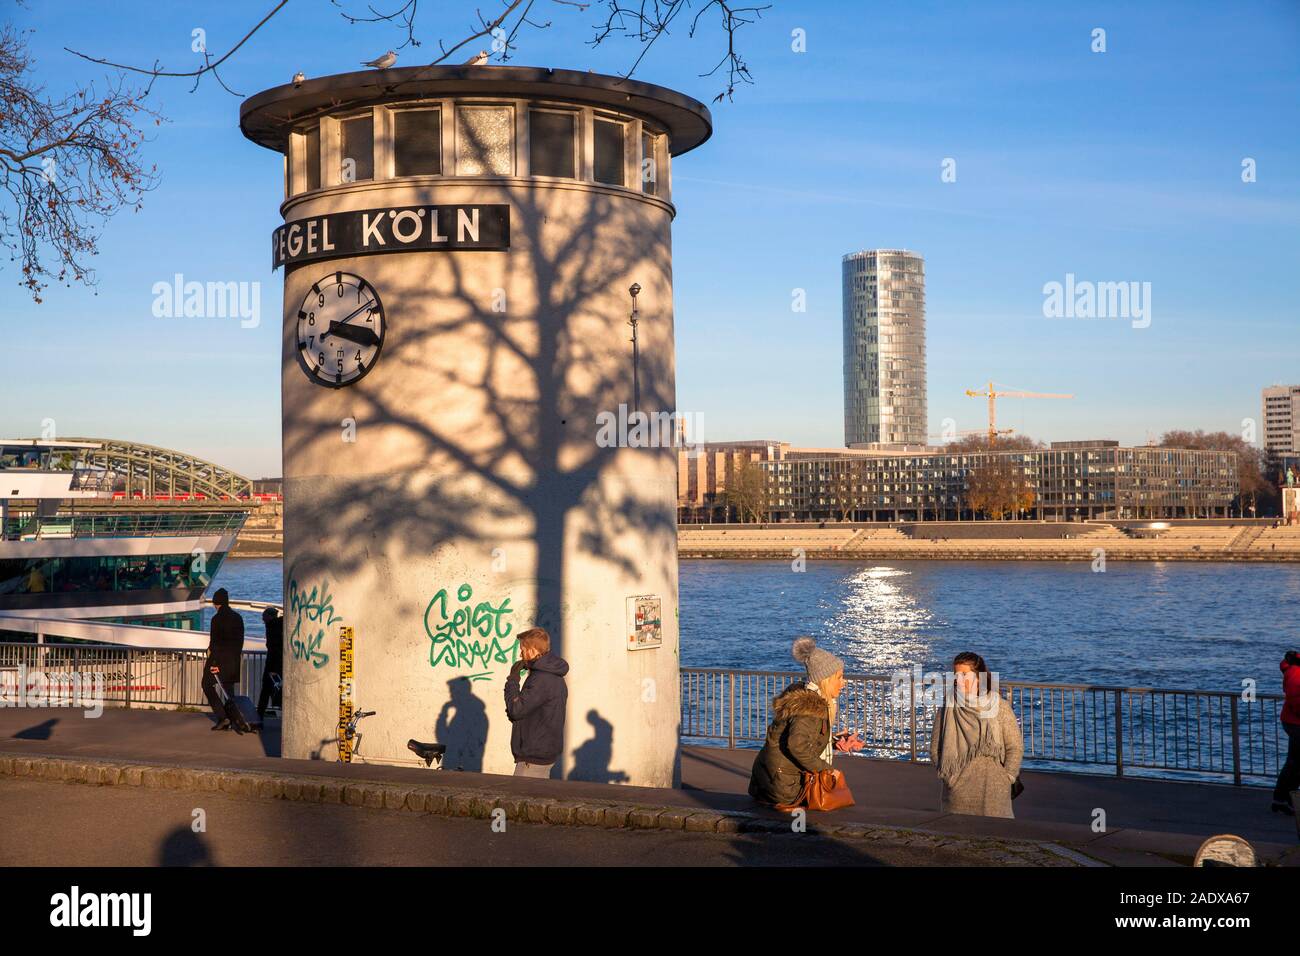 Der Wasserstand am Rhein, Blick auf das Dreieck Turm im Stadtteil Deutz, Köln, Deutschland. Pegeluhr am Rheinufer, Blick zum Trinag Stockfoto